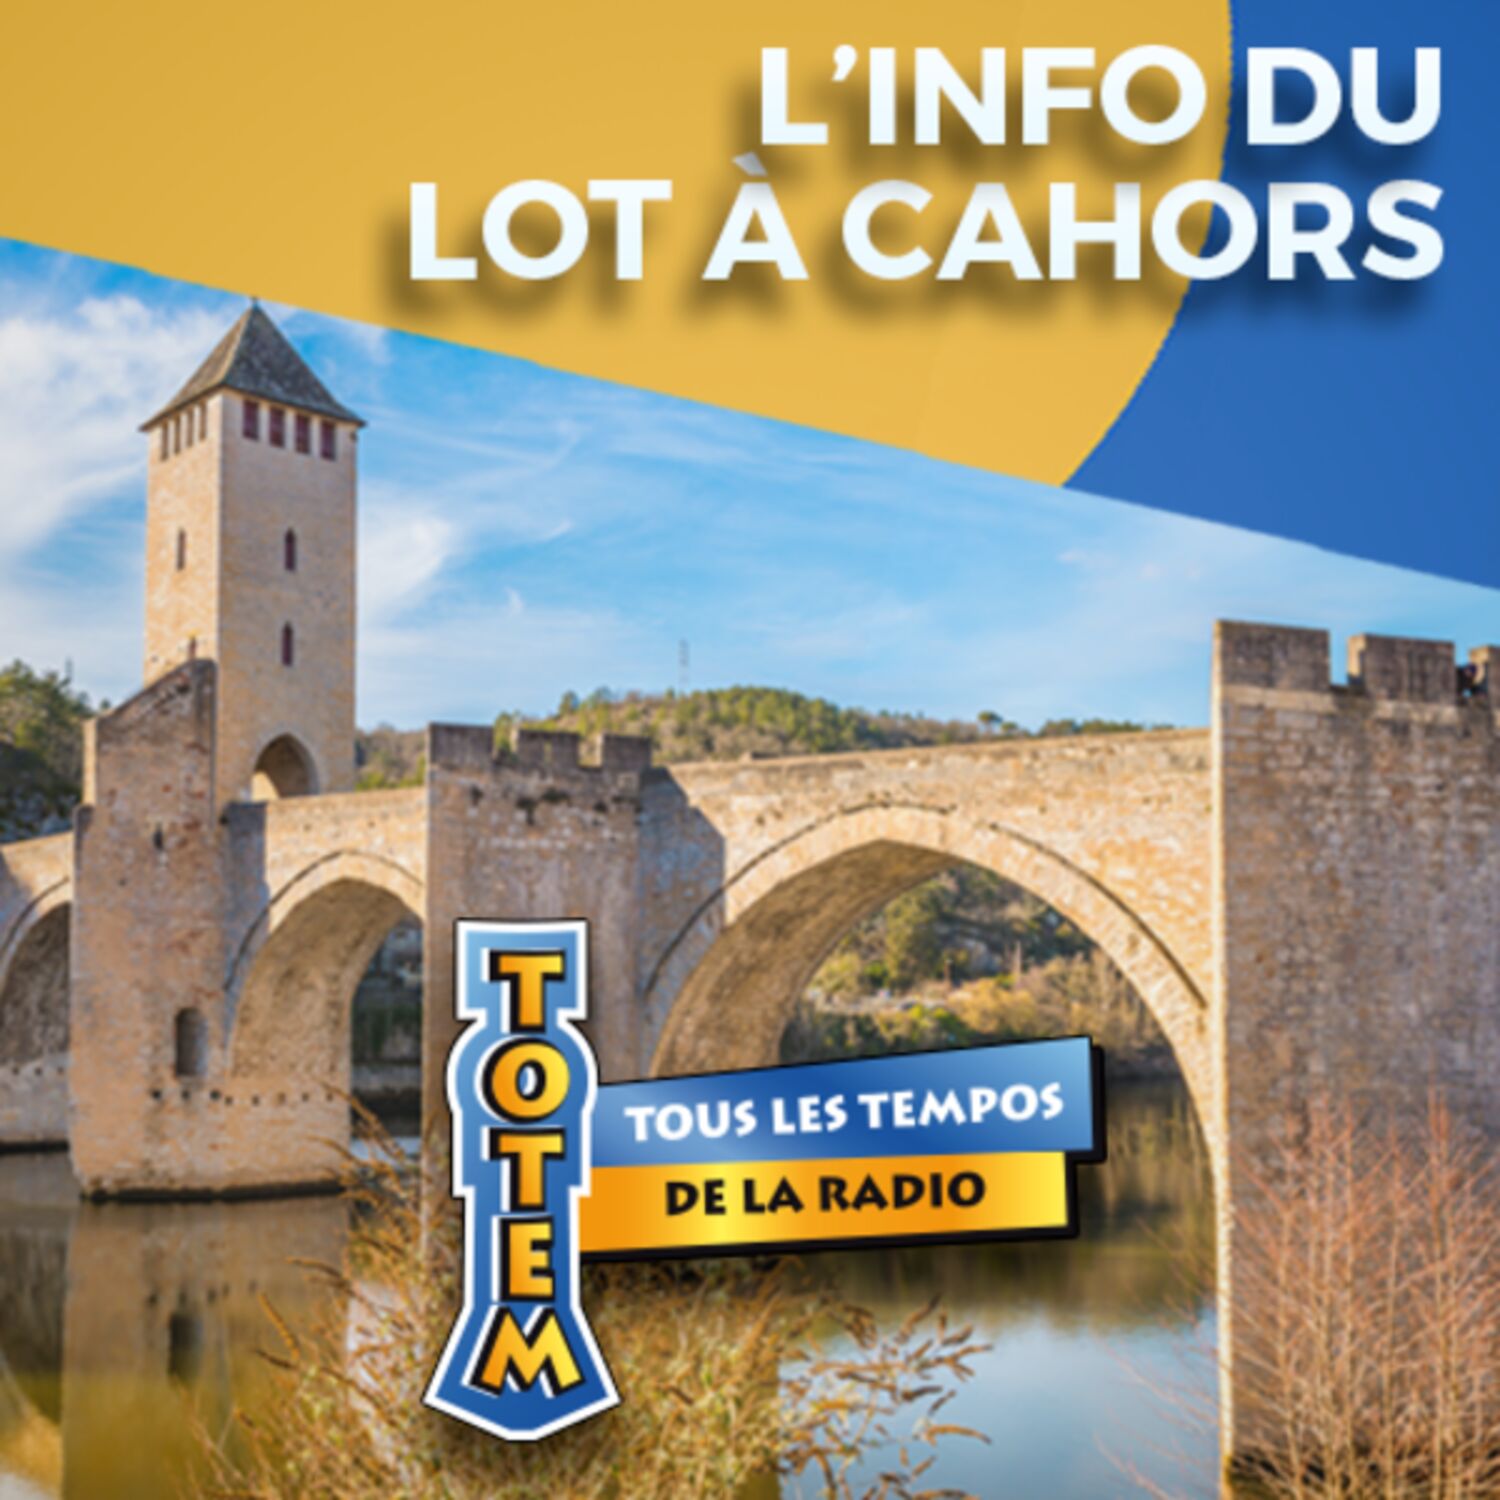 L'info du Lot à Cahors du 09/05/23 à 08h00